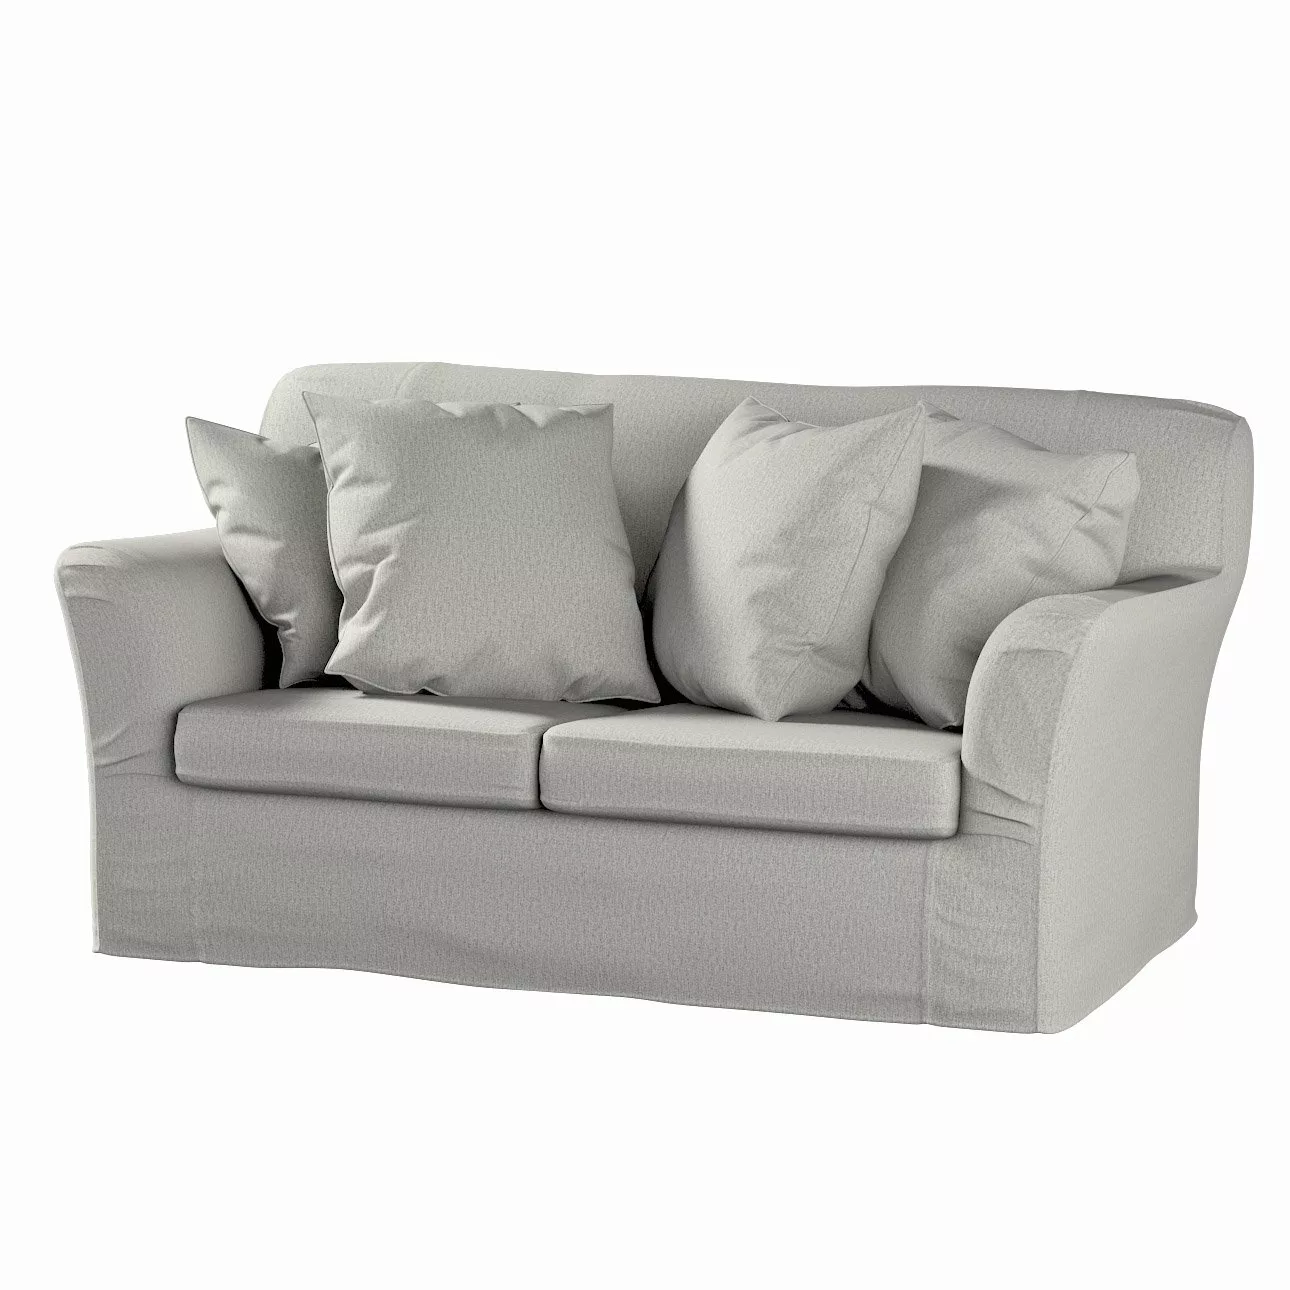 Bezug für Tomelilla 2-Sitzer Sofa nicht ausklappbar, grau-beige, Sofahusse, günstig online kaufen